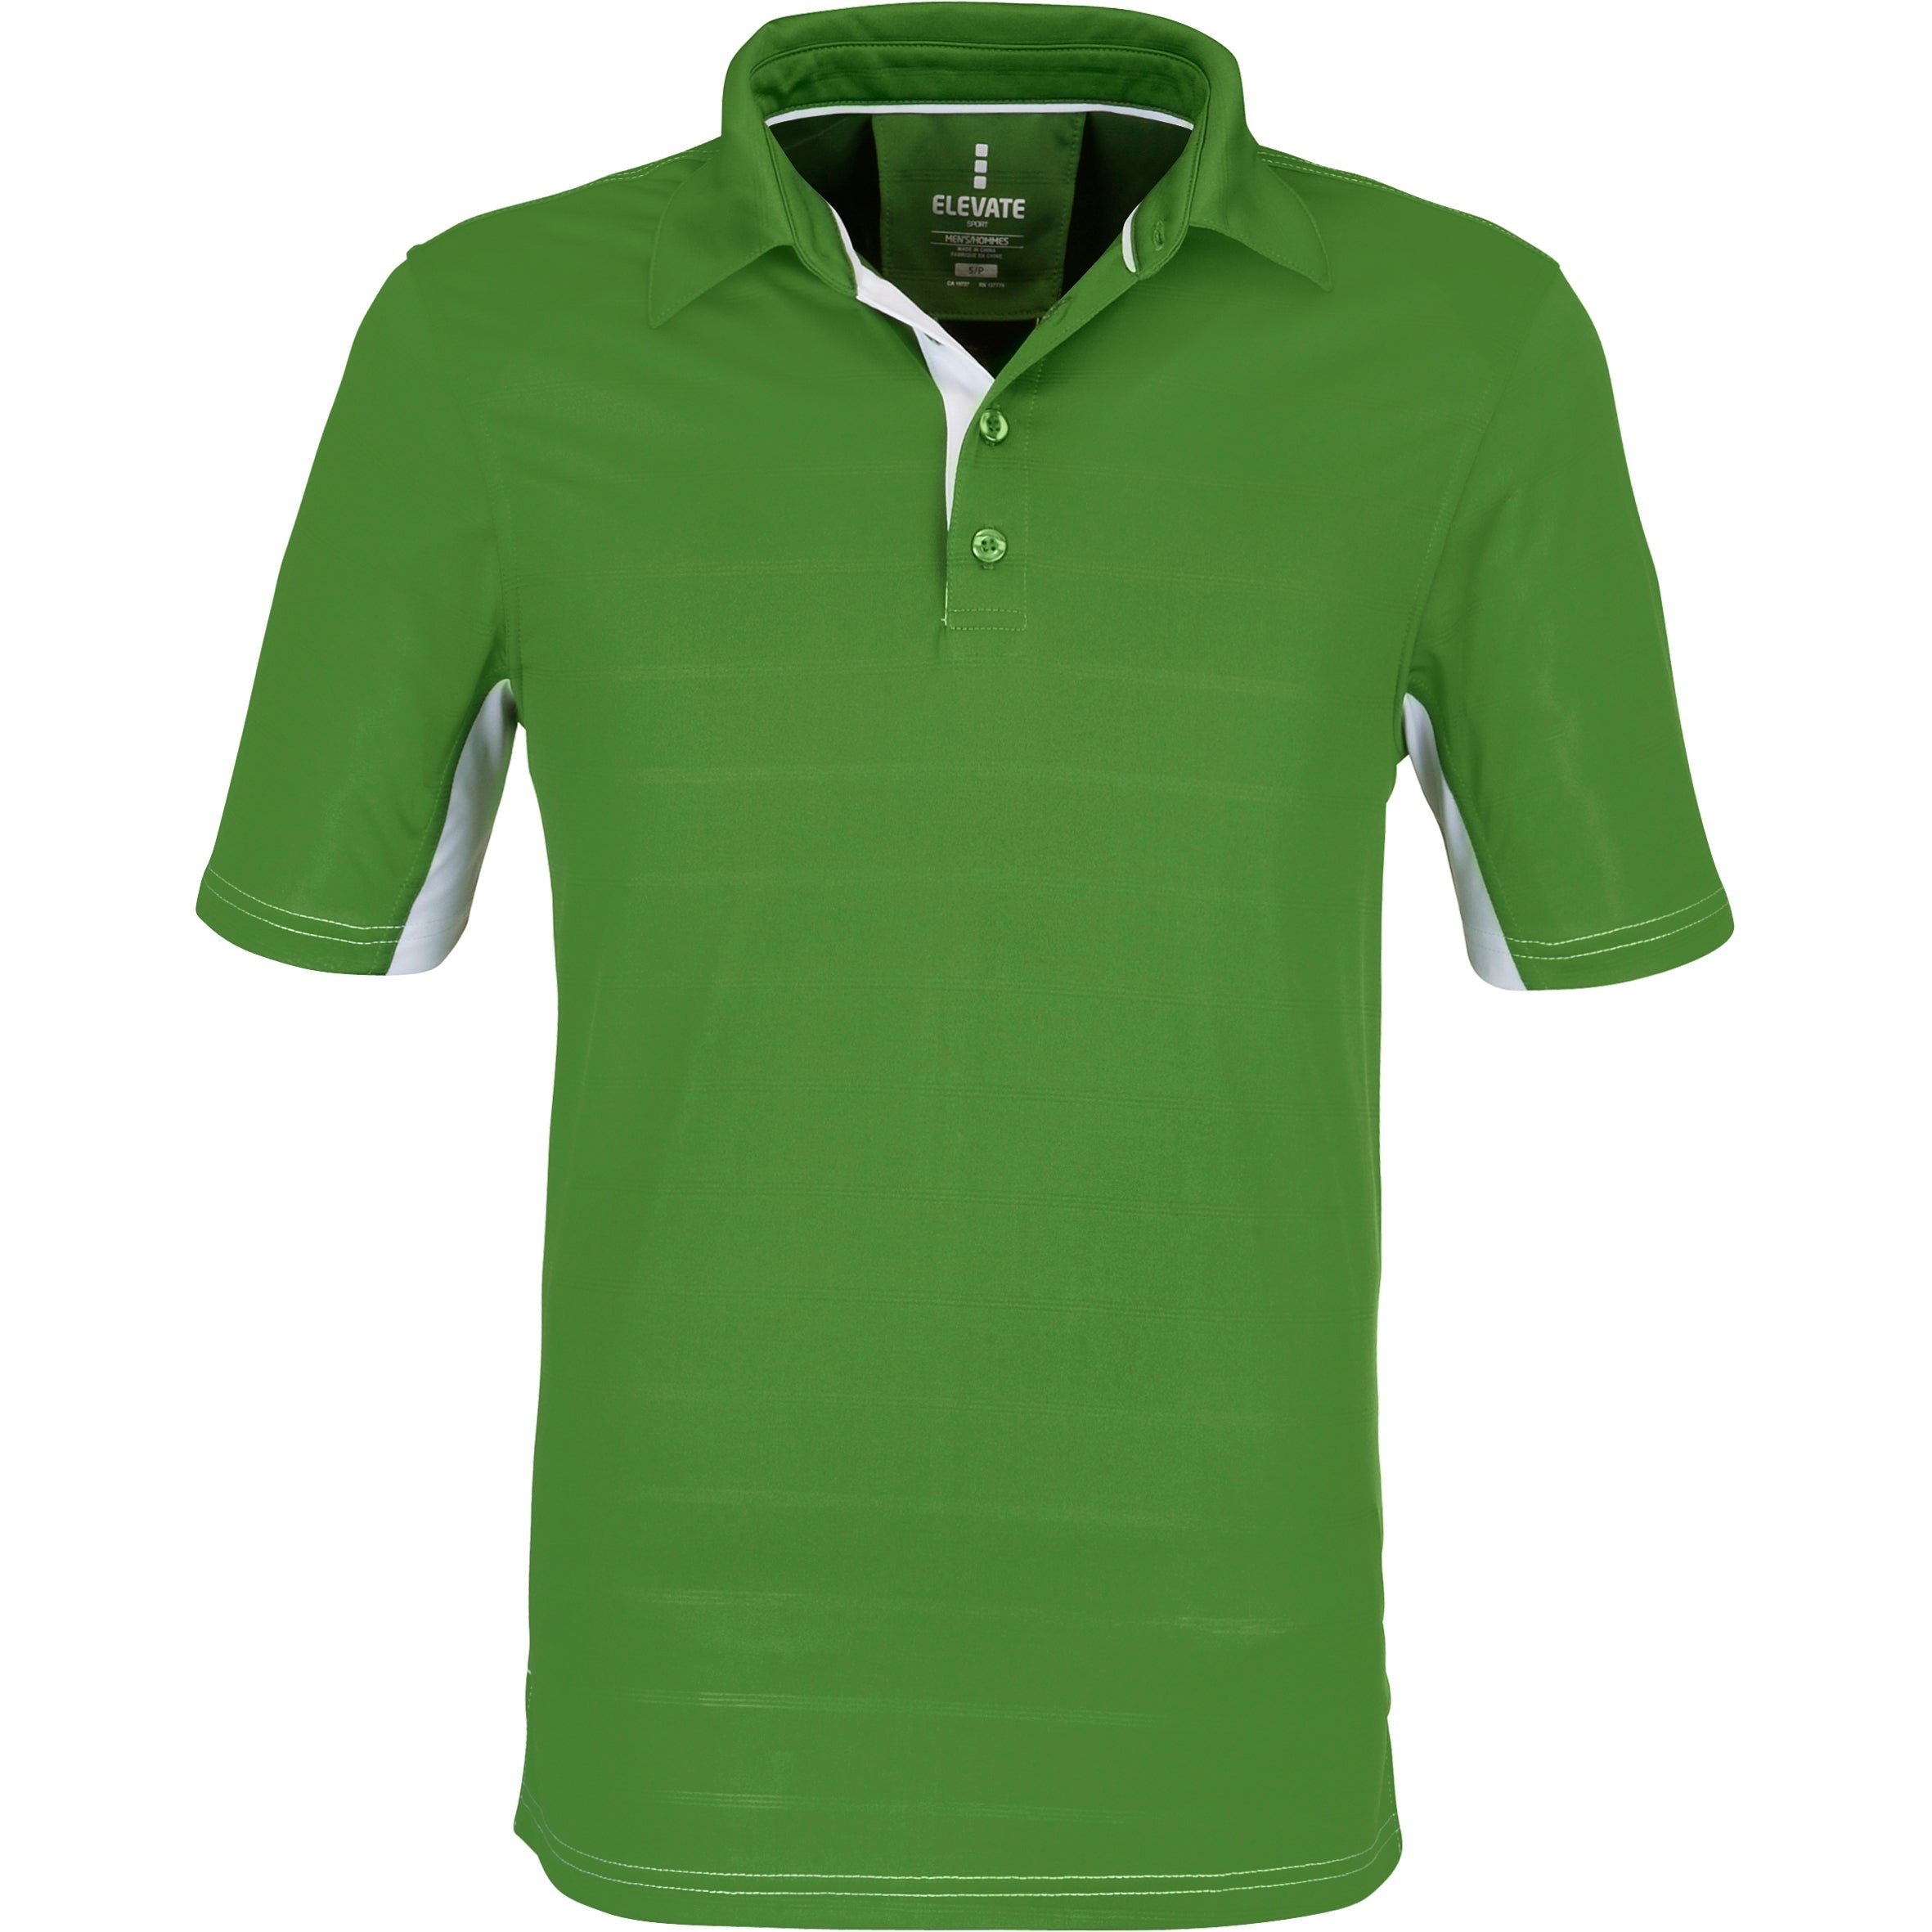 Mens Prescott Golf Shirt - Blue Only-2XL-Green-G